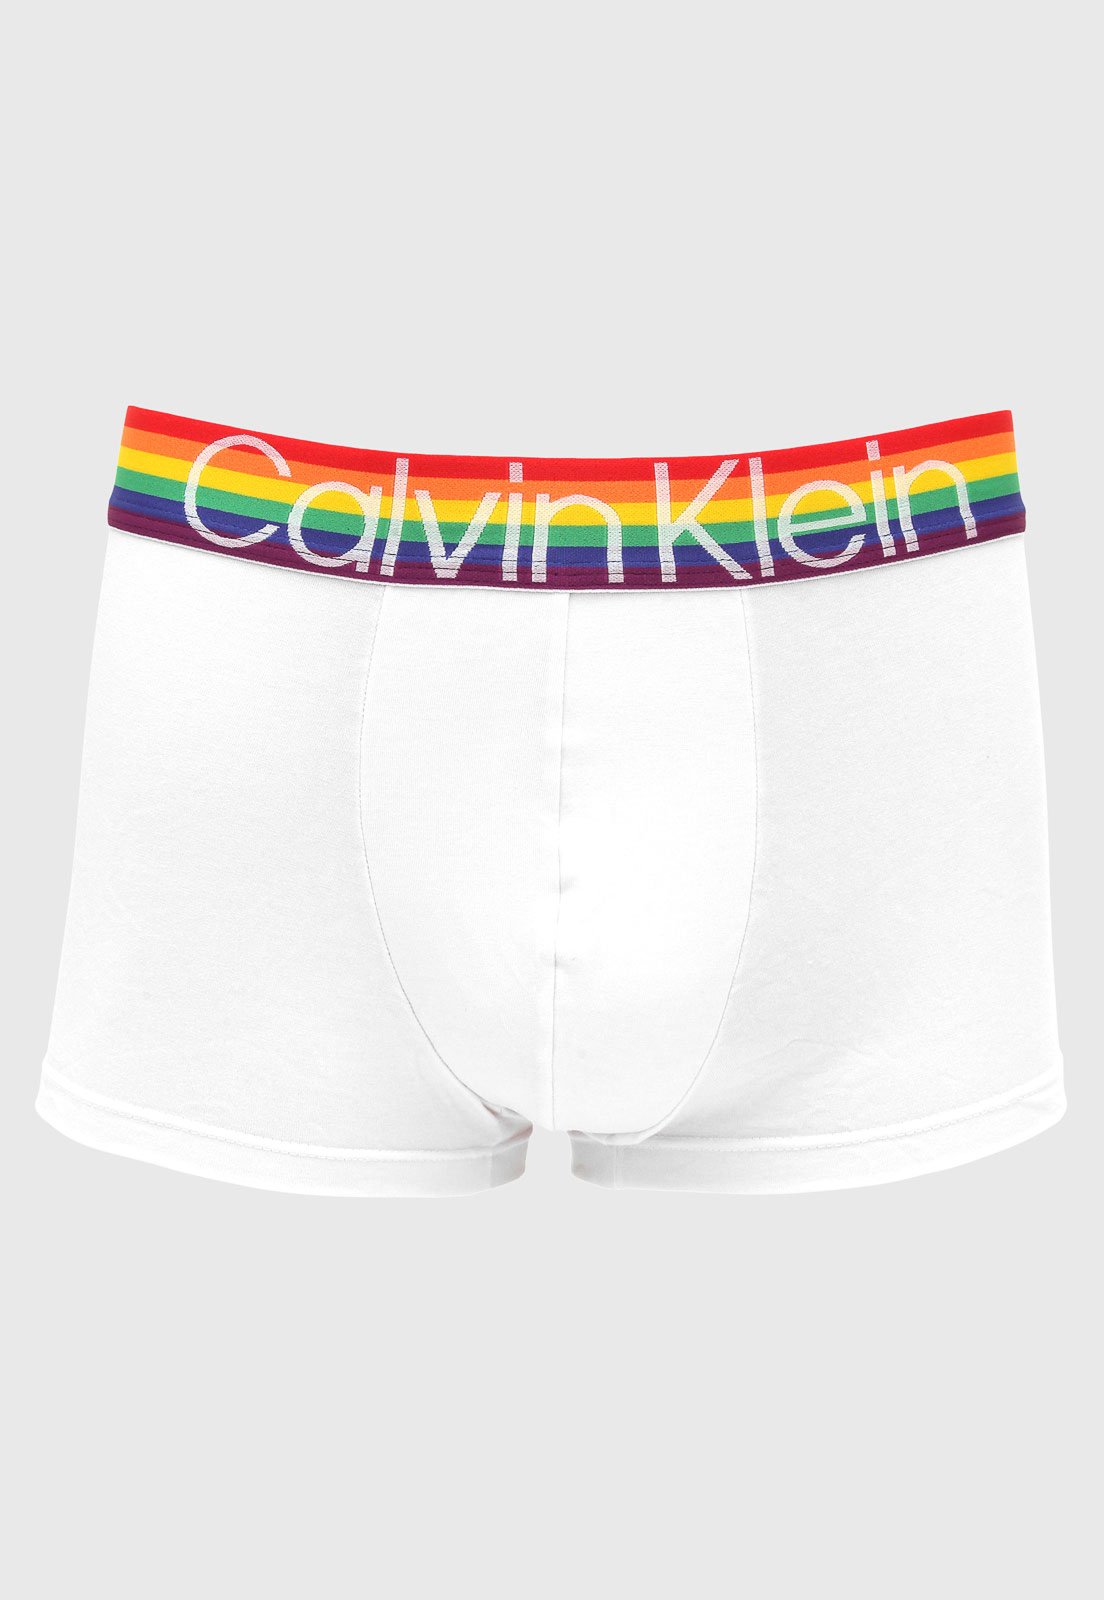 Cueca Calvin Klein Underwear Fio Dental Pride Branca - Compre